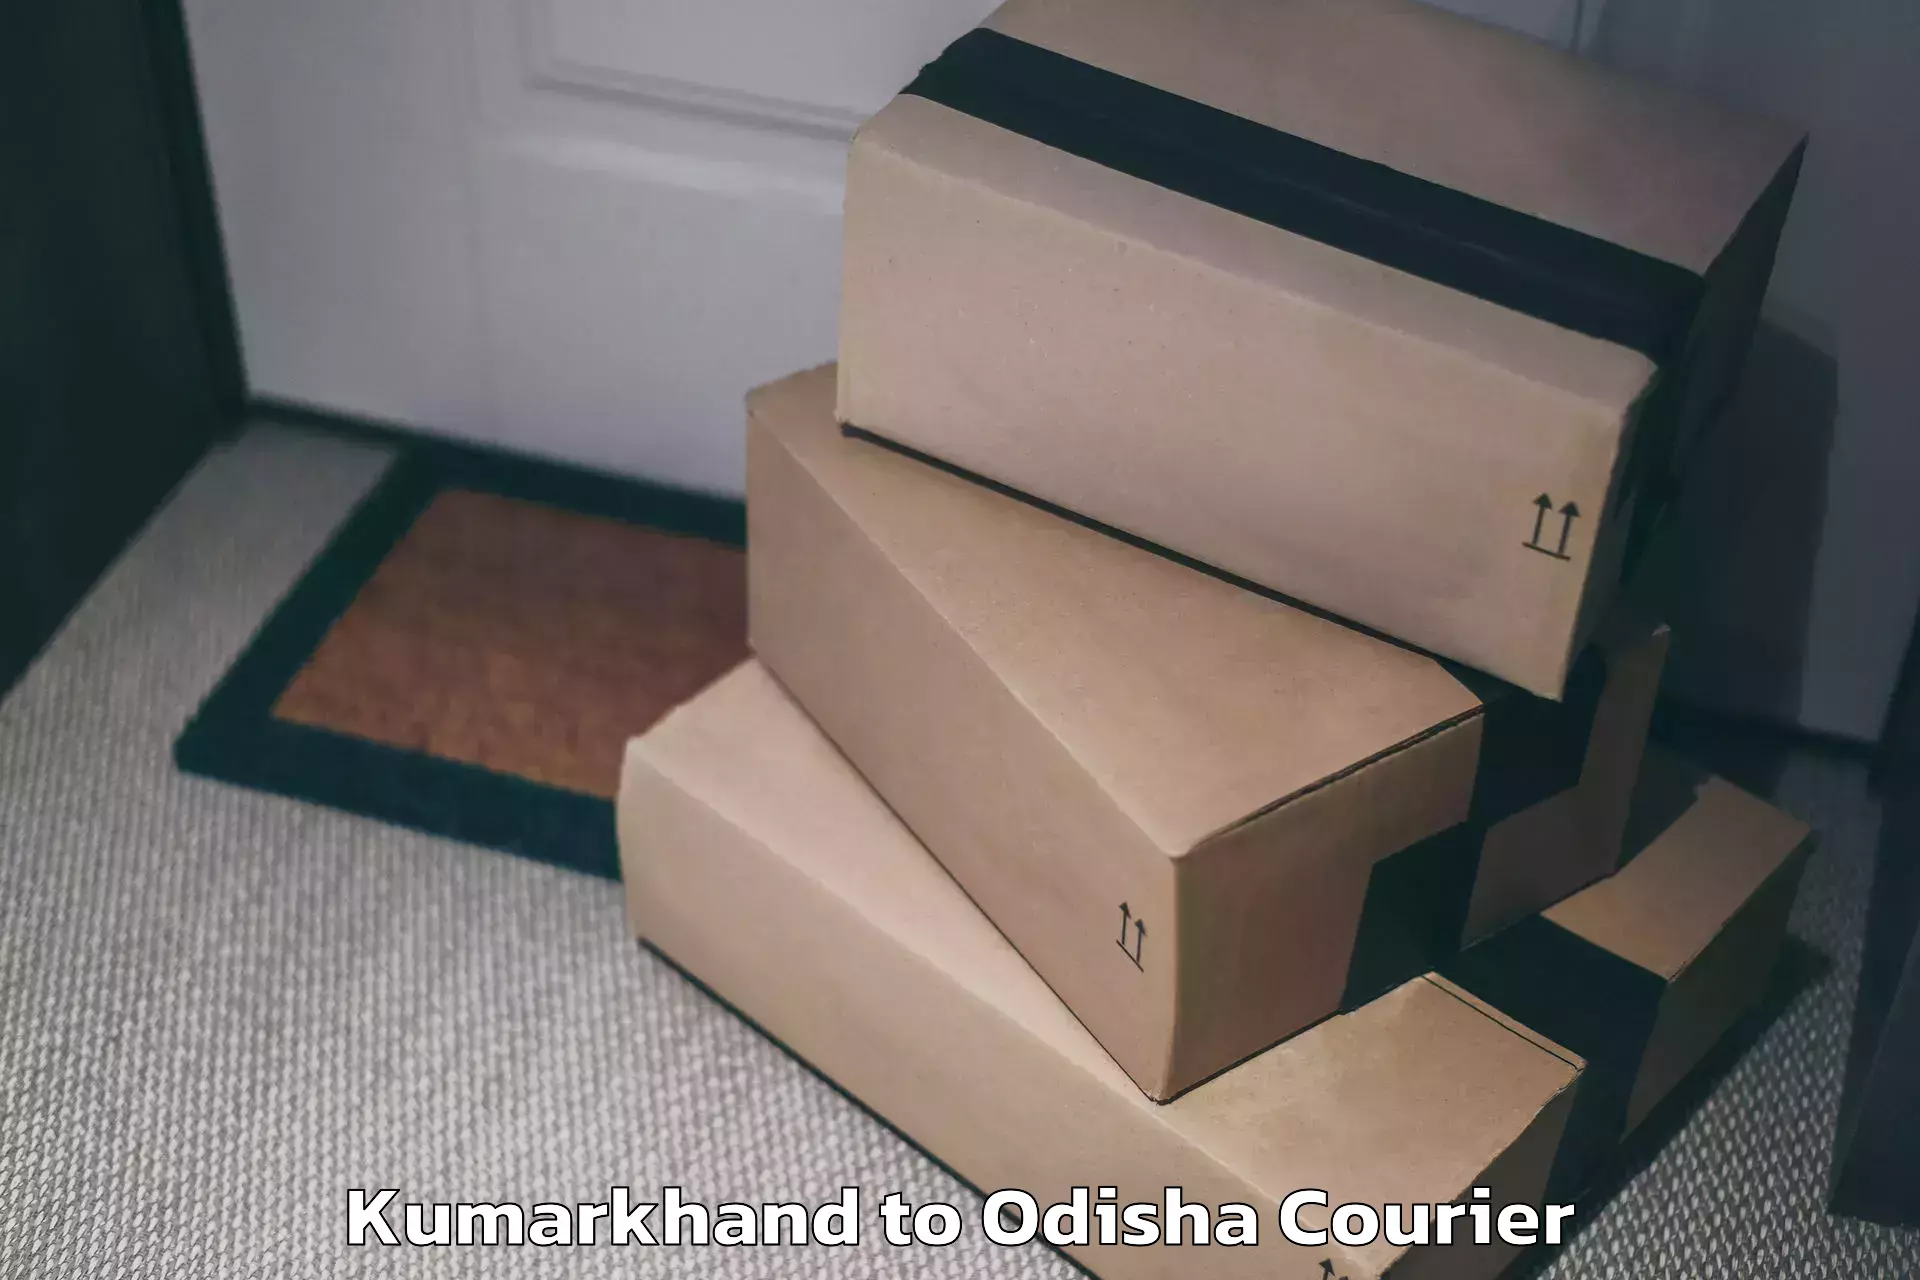 Luggage shipment specialists Kumarkhand to Nuapada